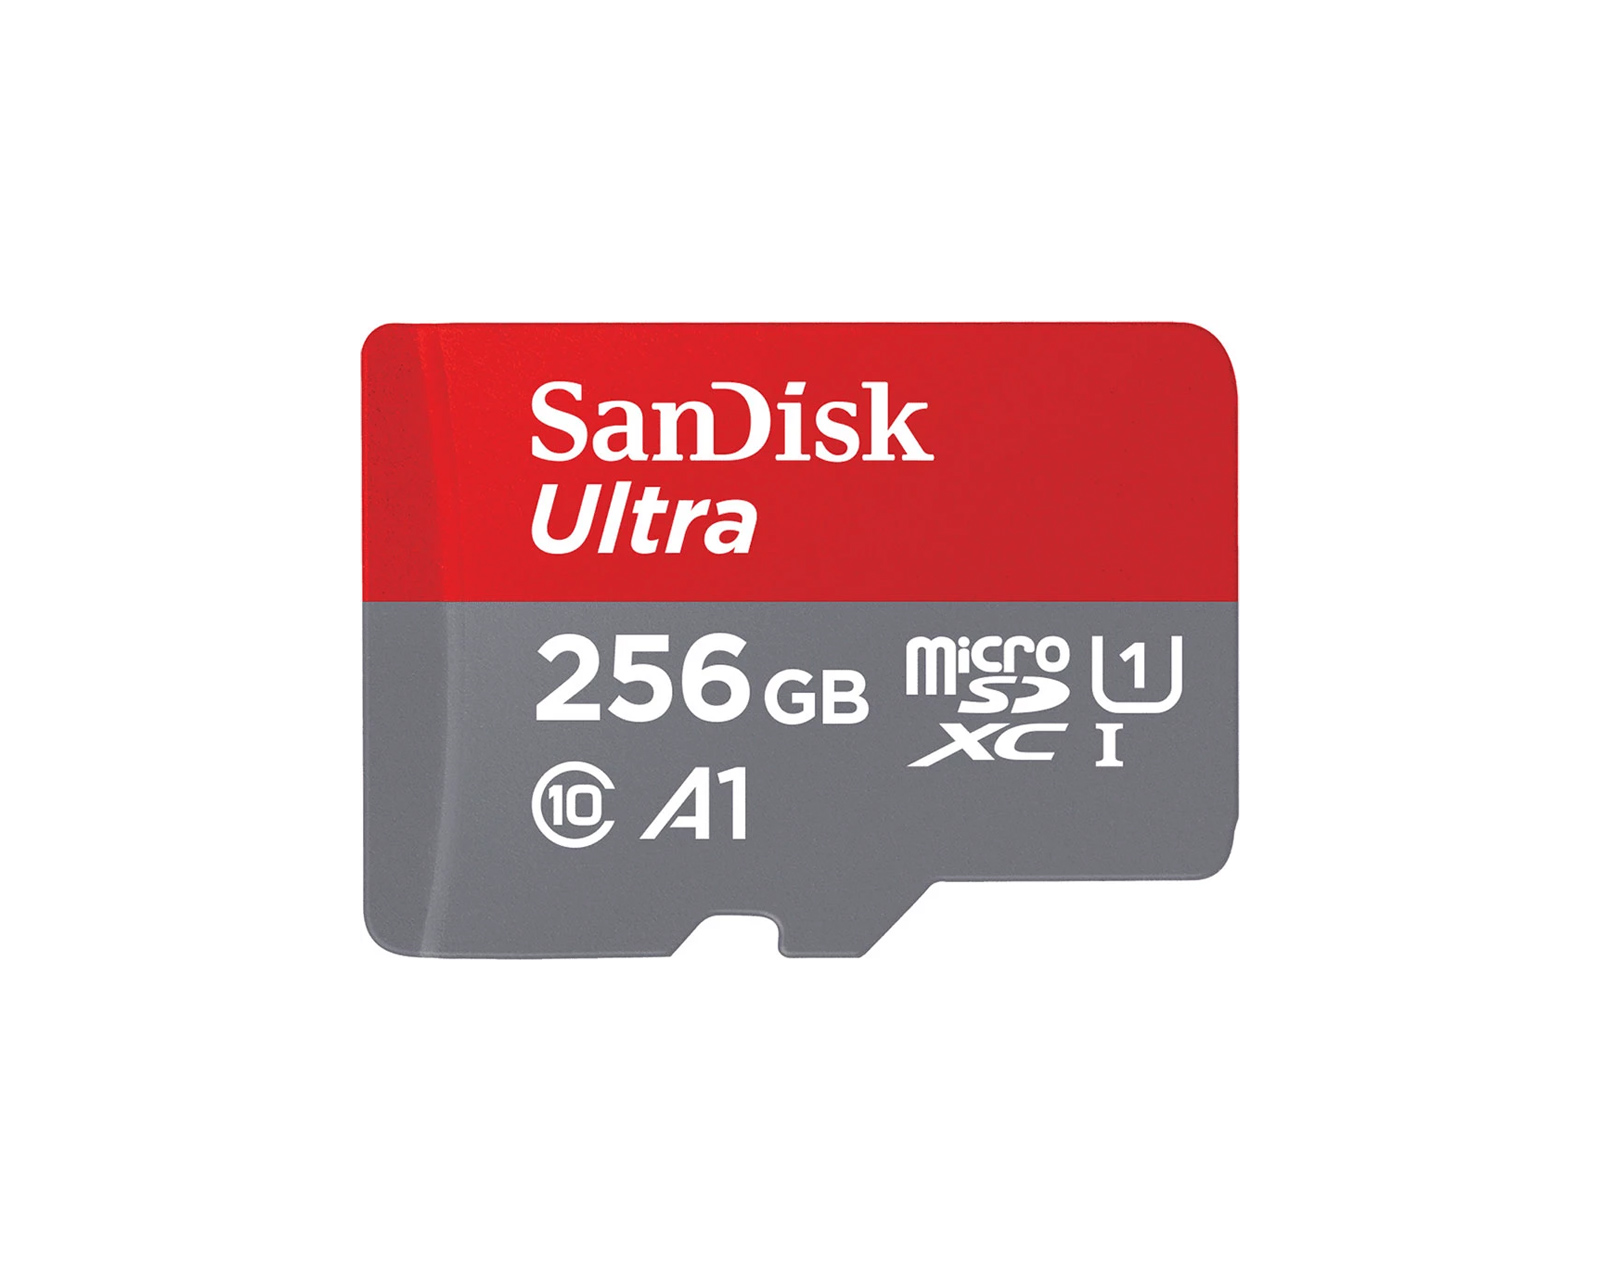 Basics 256GB Ultra Fast USB 3.1 Flash Drive, Black